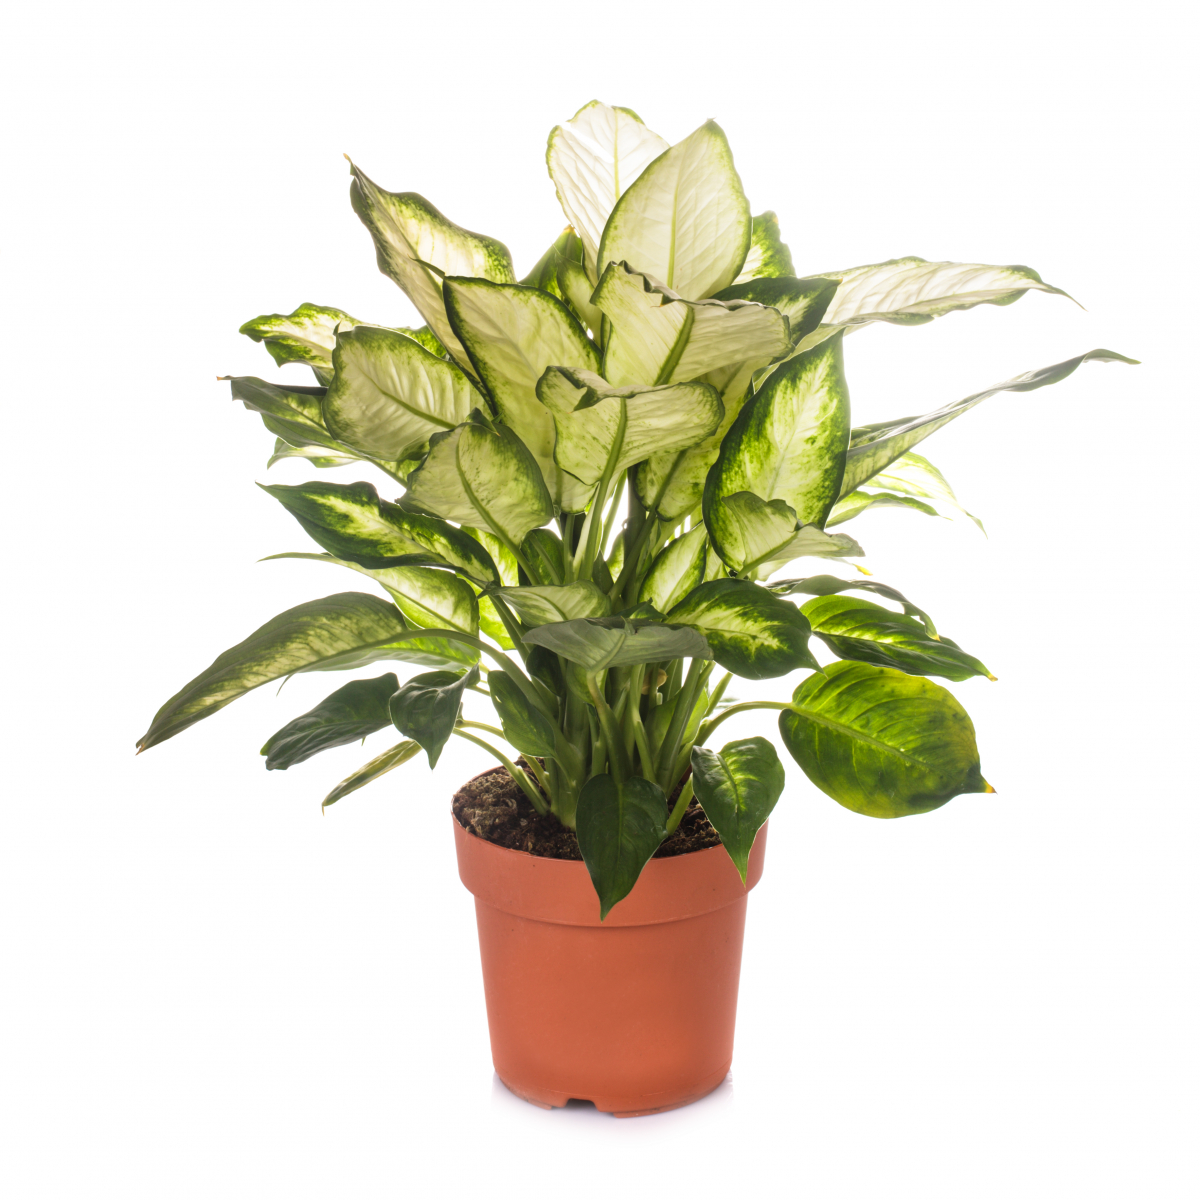 Plantene har grønne blad med prikker eller tegninger i hvitt, lysegult eller lysegrønt.